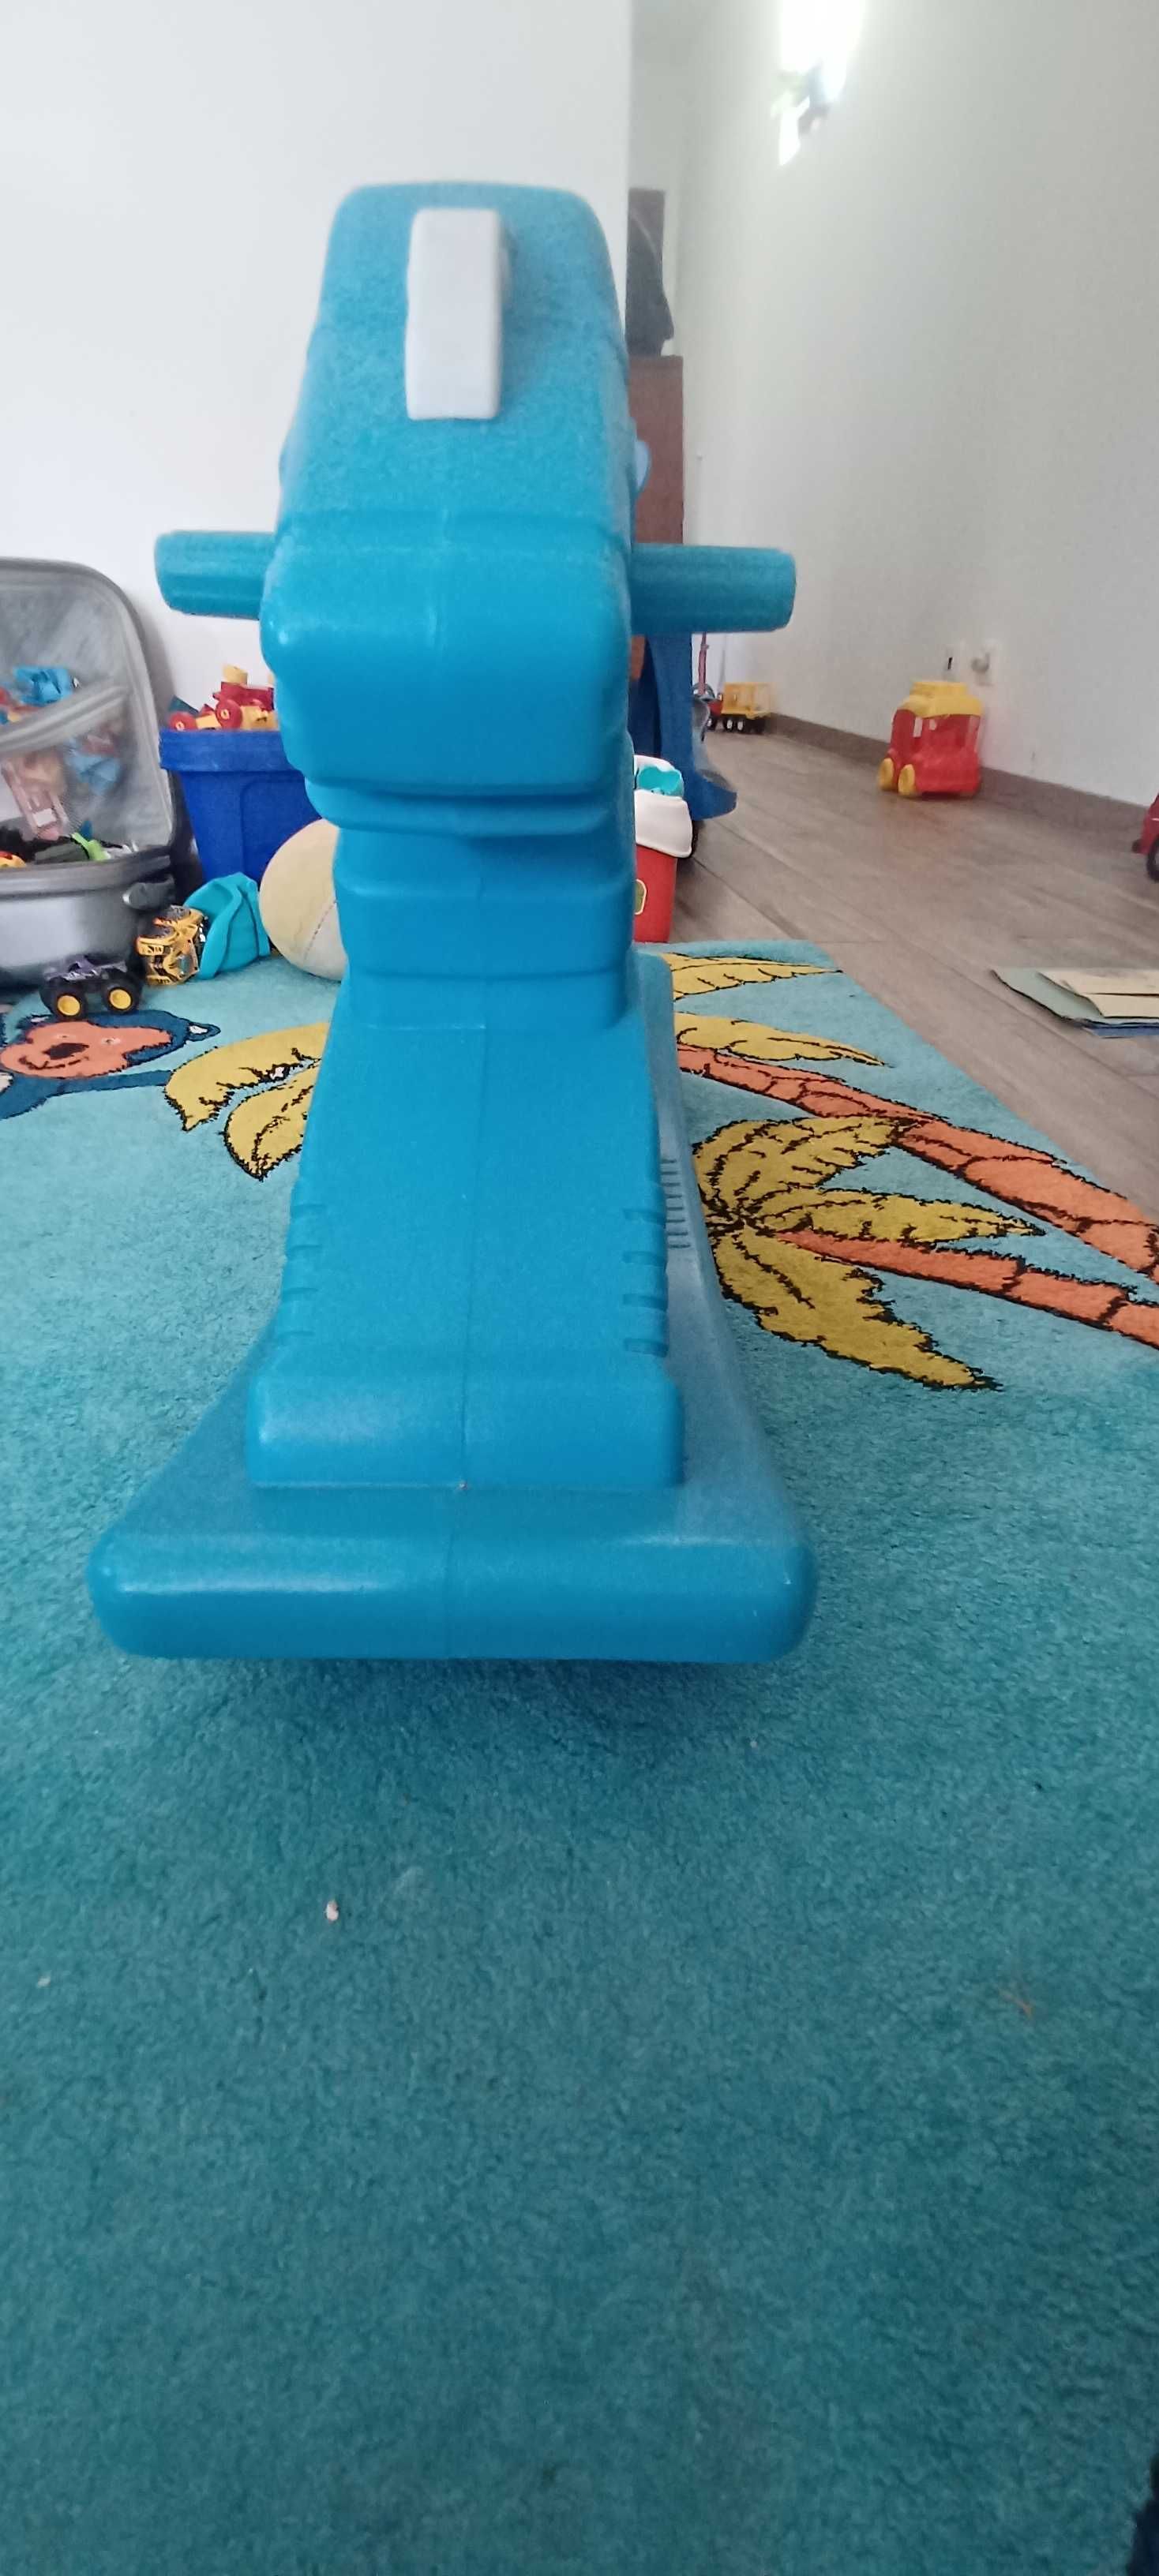 Cavalinho baloiço plastico da chicco azul